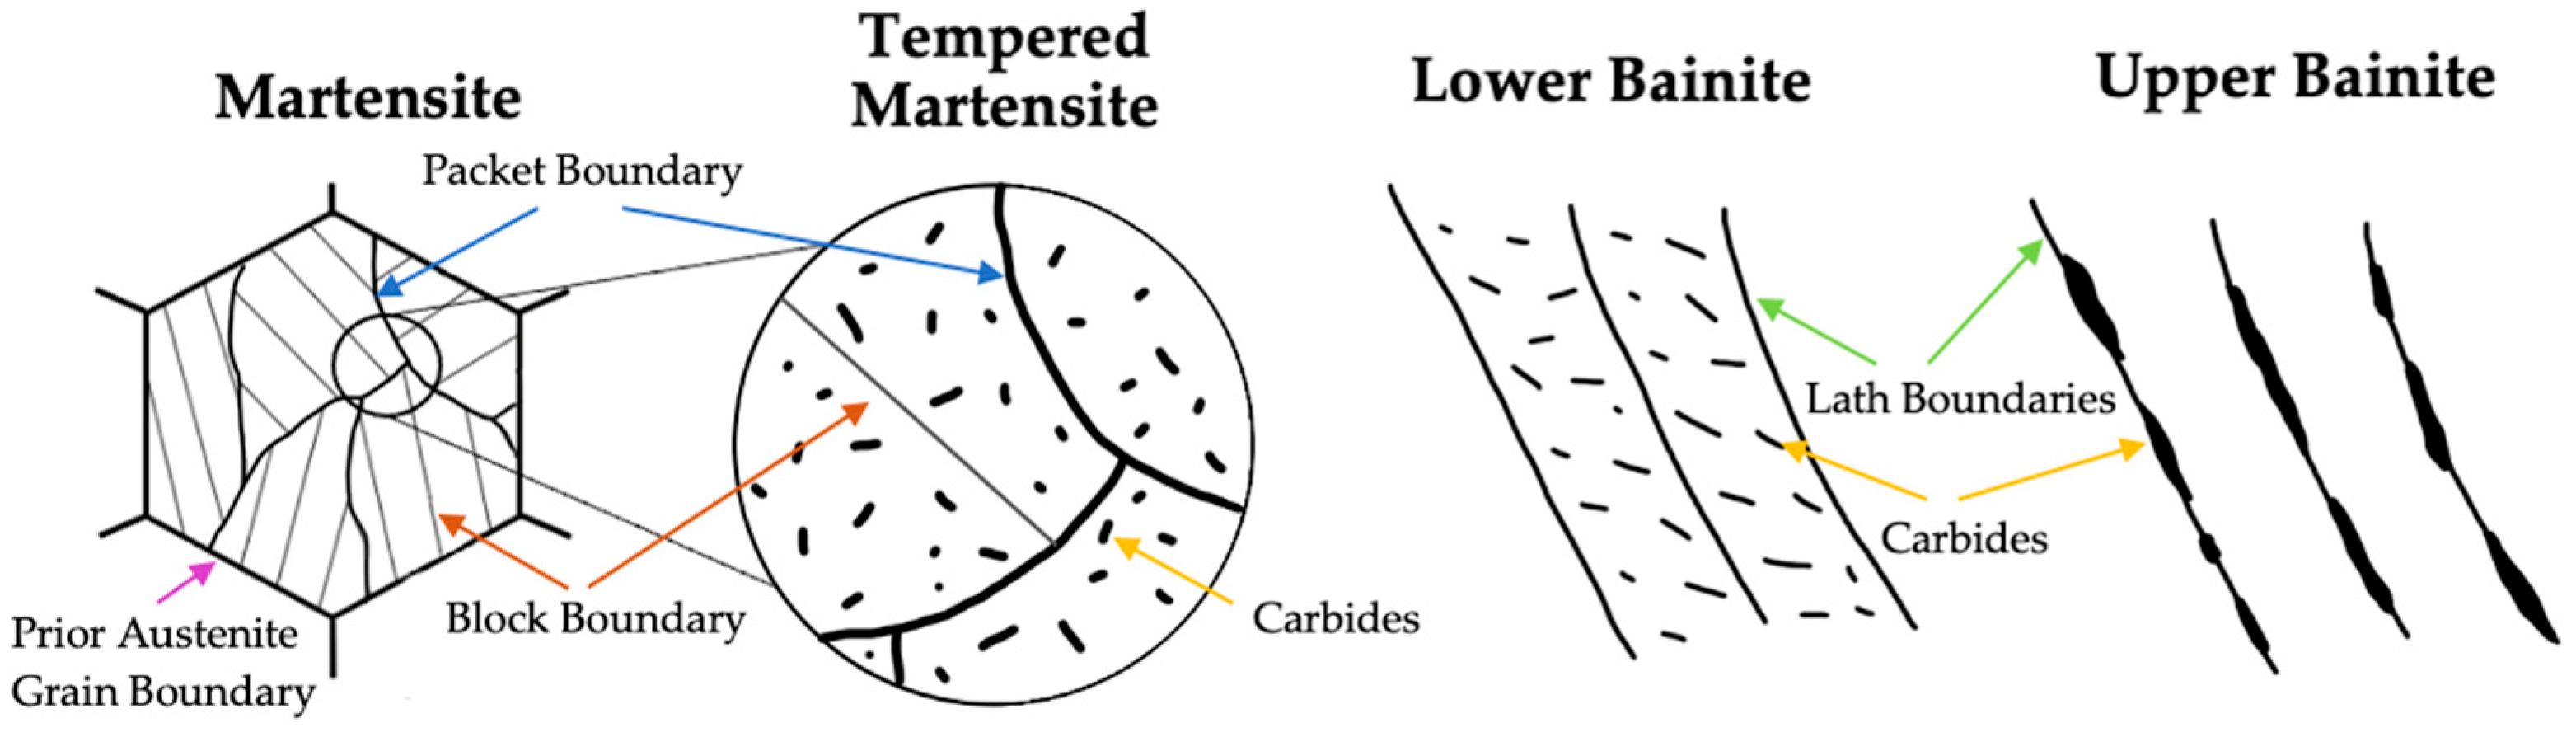 bainite microstructure sketch